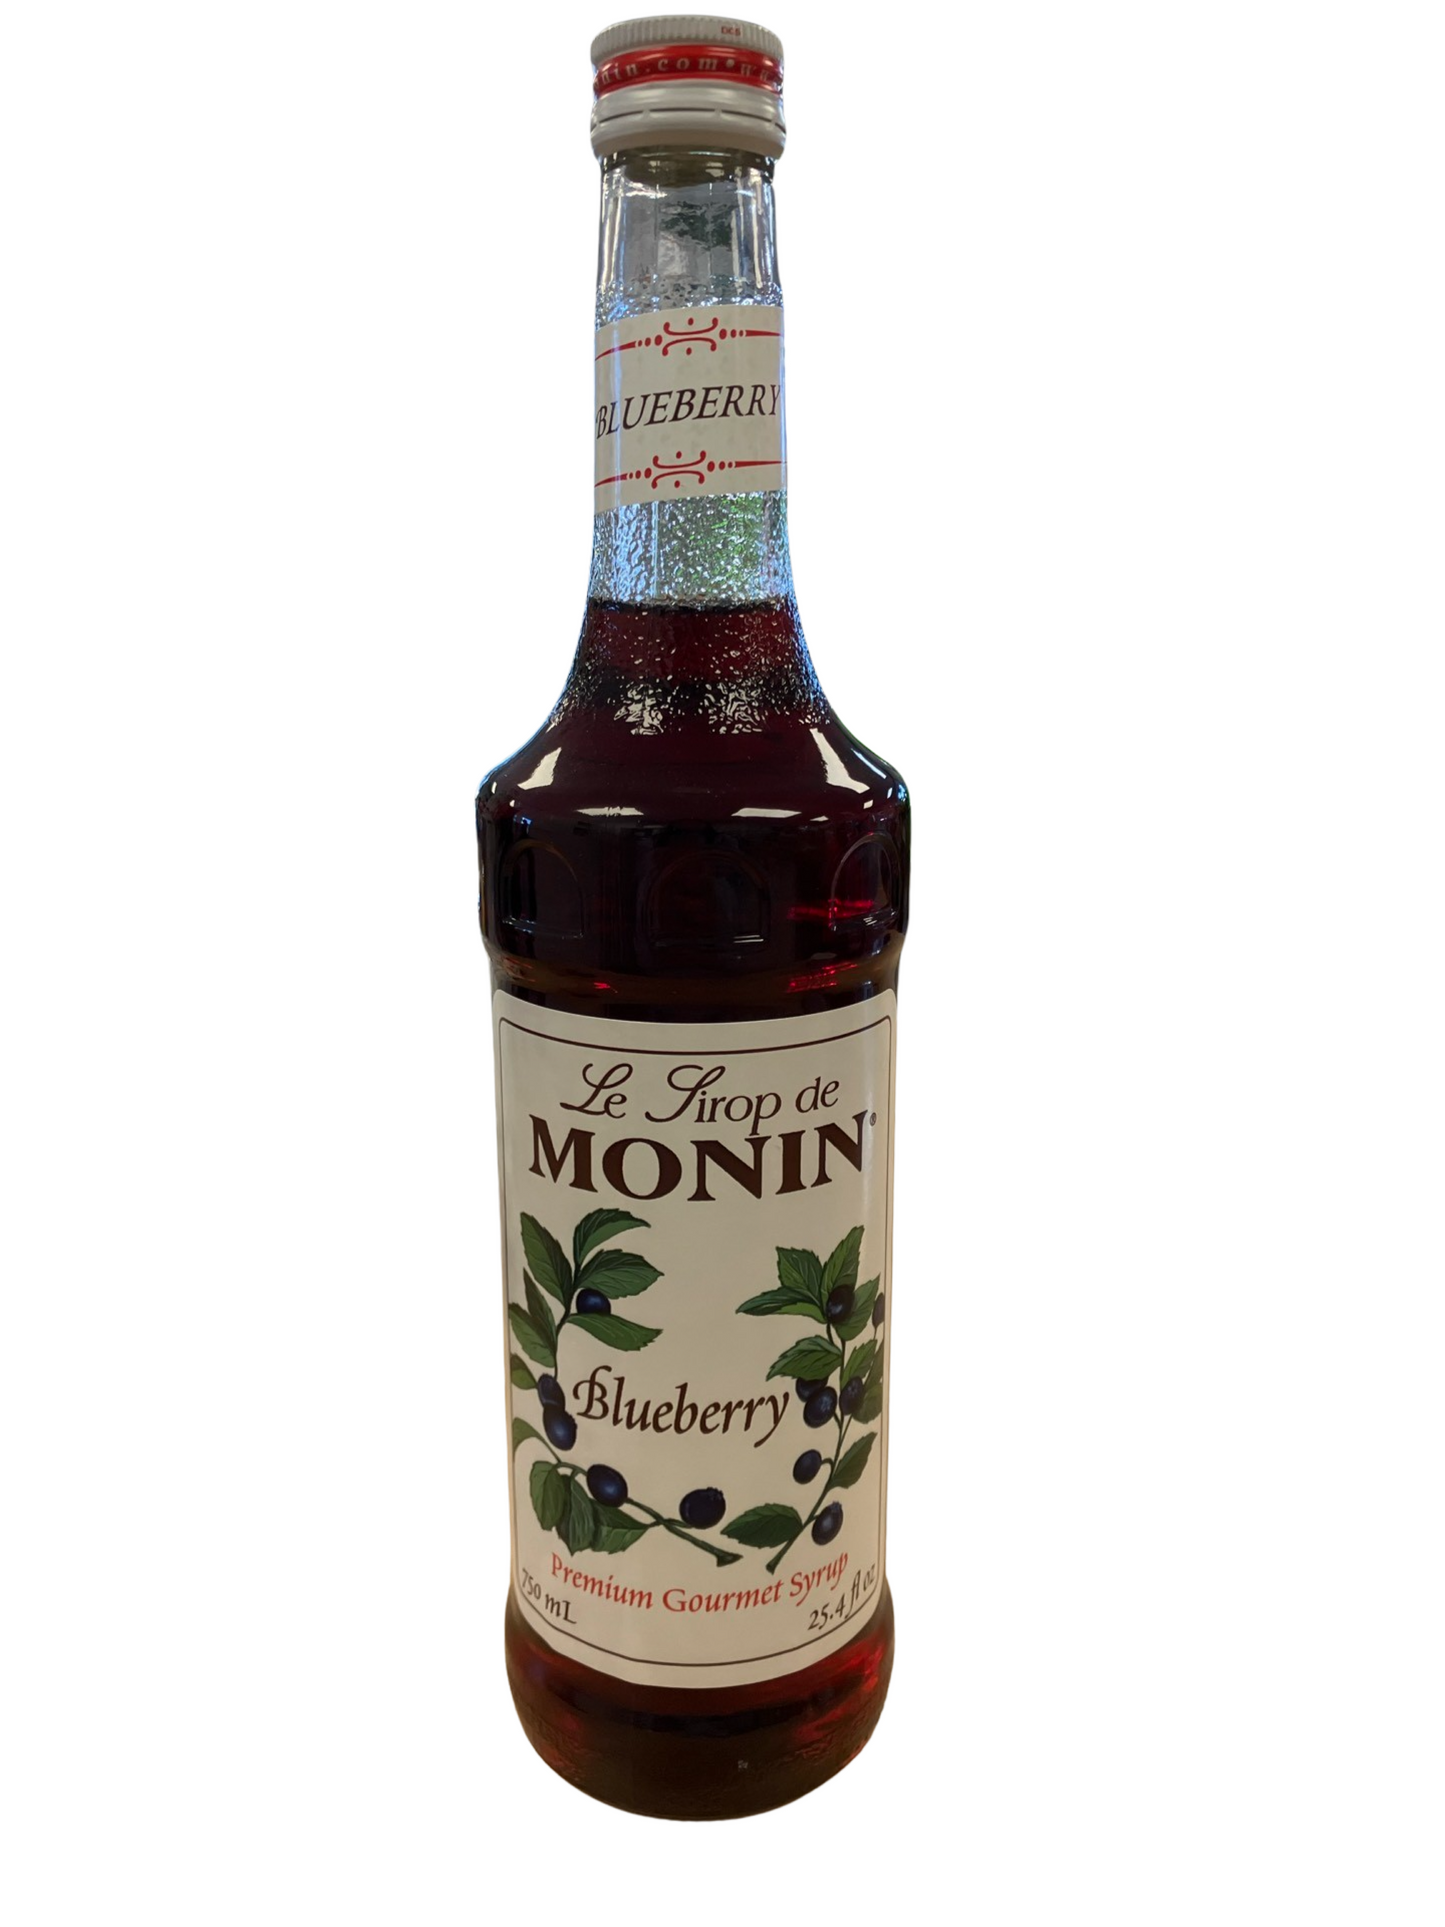 Monin - Blueberry - 750ml - Glass Bottle